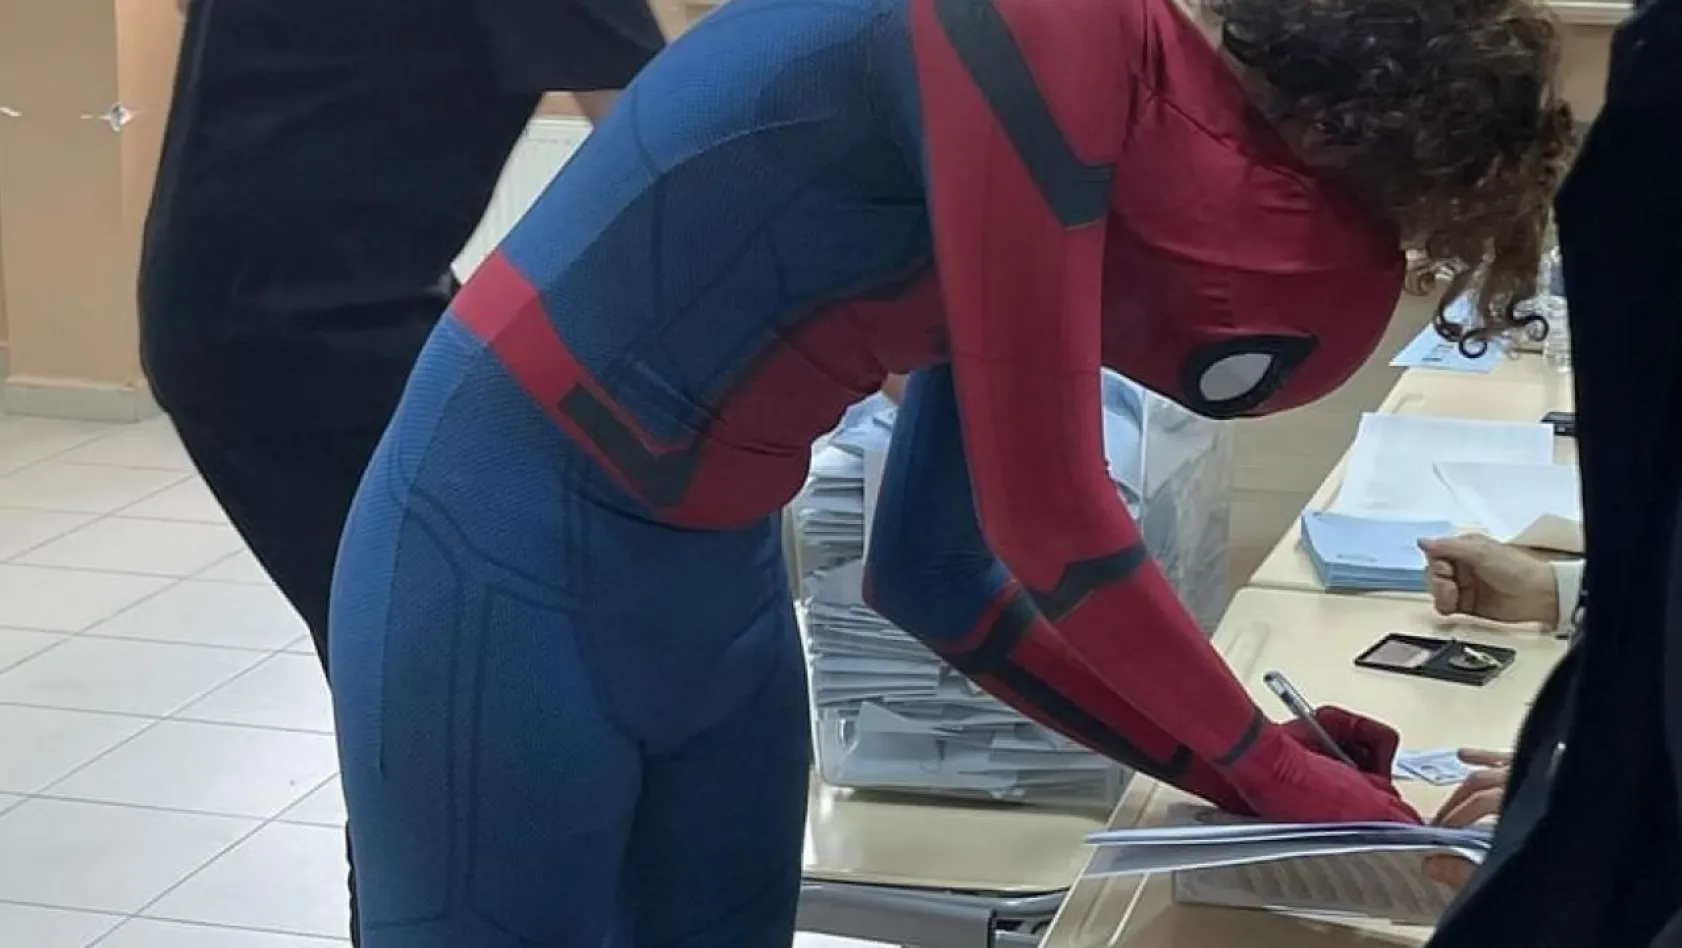 Spiderman kıyafeti ile oy kullandı